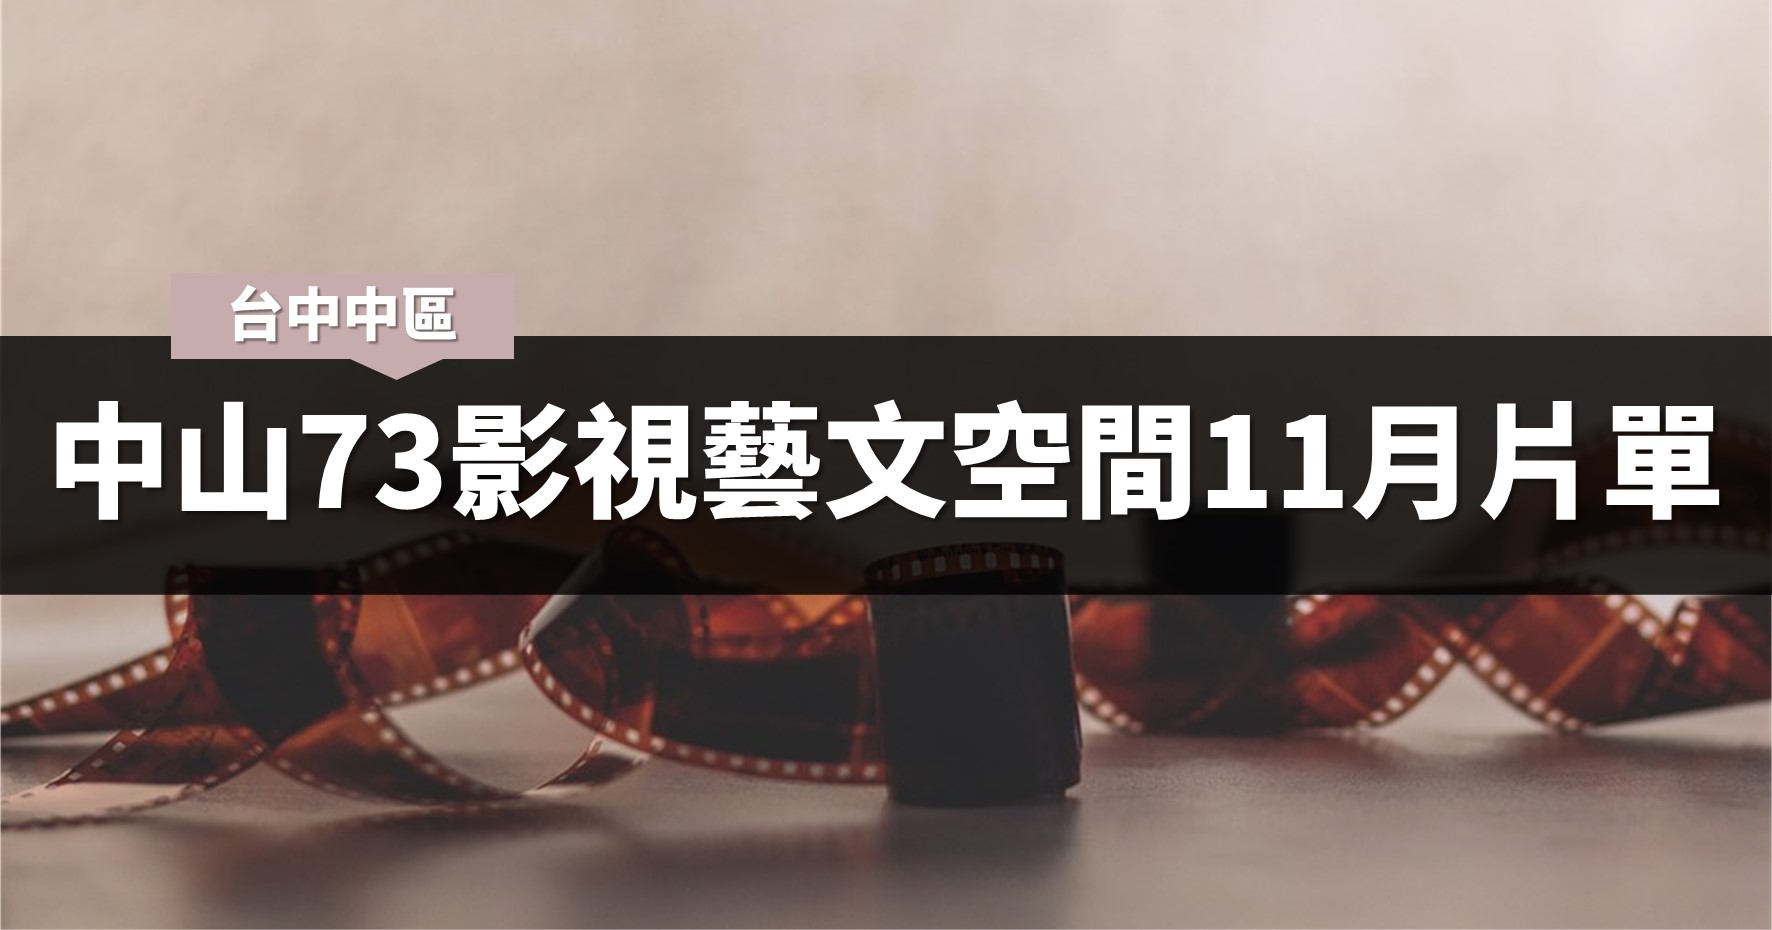 台中活動》中山73影視藝文空間11月片單與臺中國際女性影展